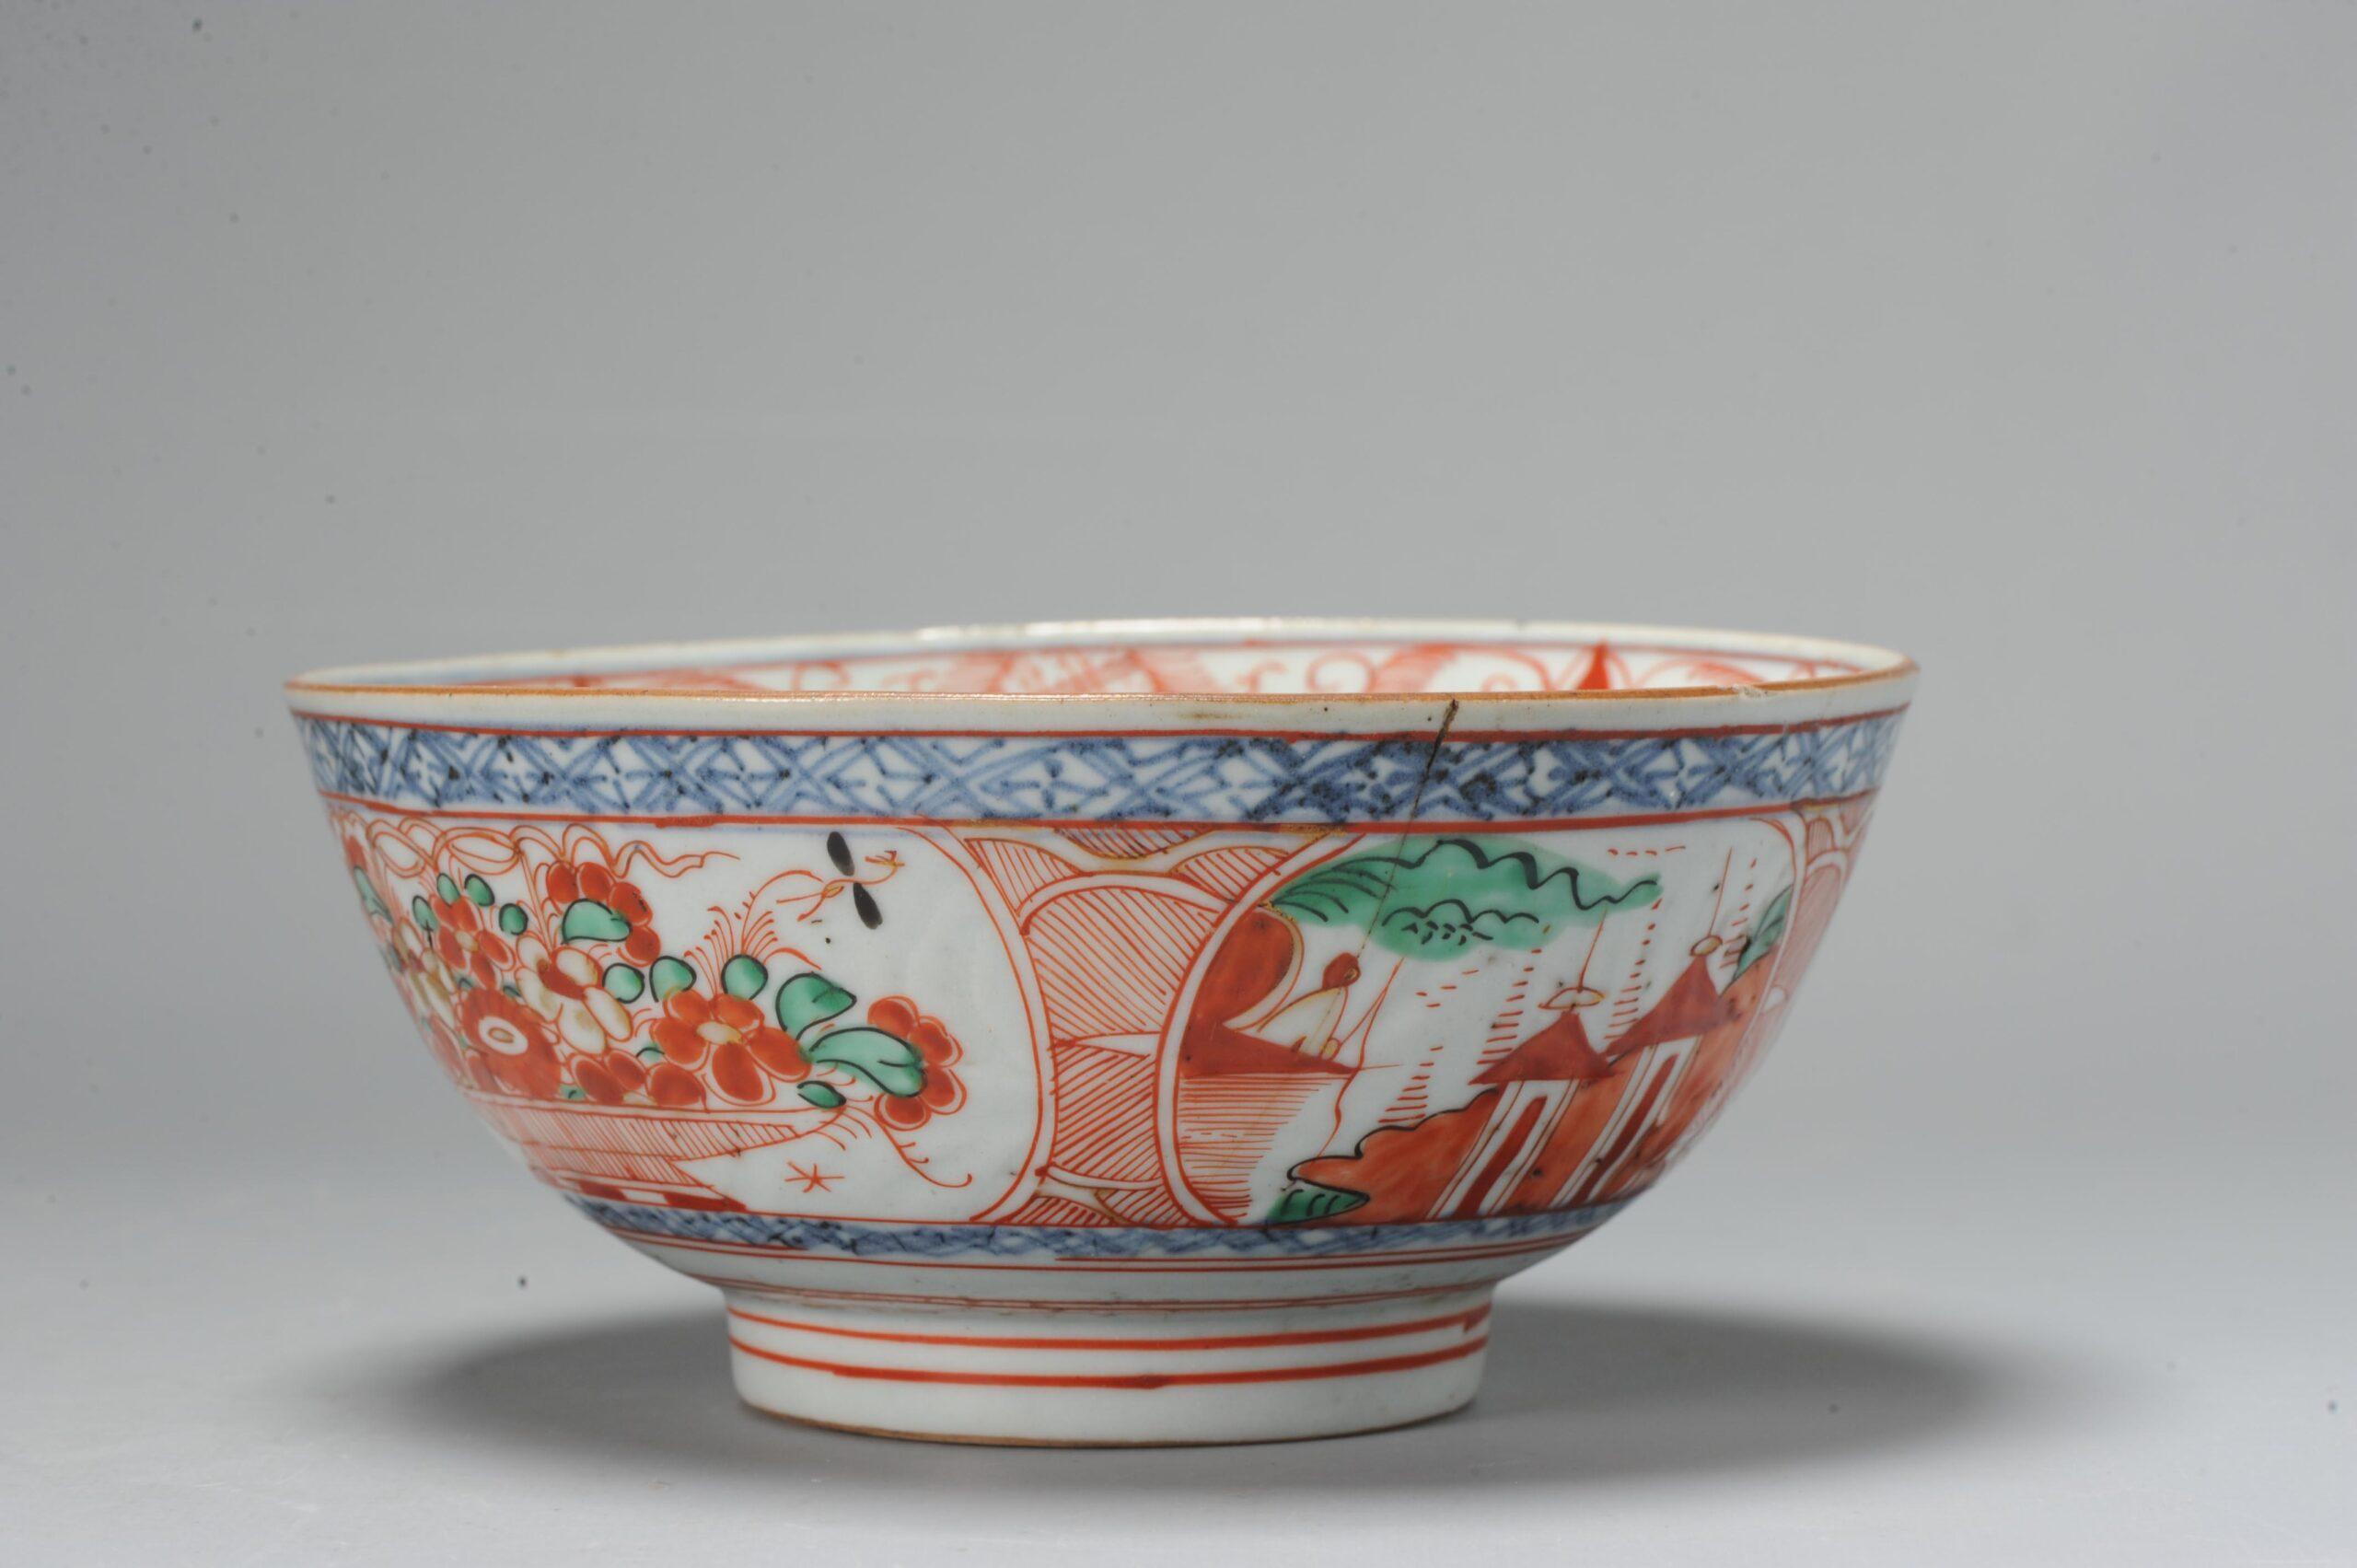 Très belle coupe en porcelaine Kangxi Amsterdam Bont du XVIIIe siècle.

Nous jetons un coup d'œil sur la porcelaine d'Amsterdams Bont en provenance de Chine. Une niche relativement peu connue de porcelaine chinoise datant d'environ 1680-1740 qui a